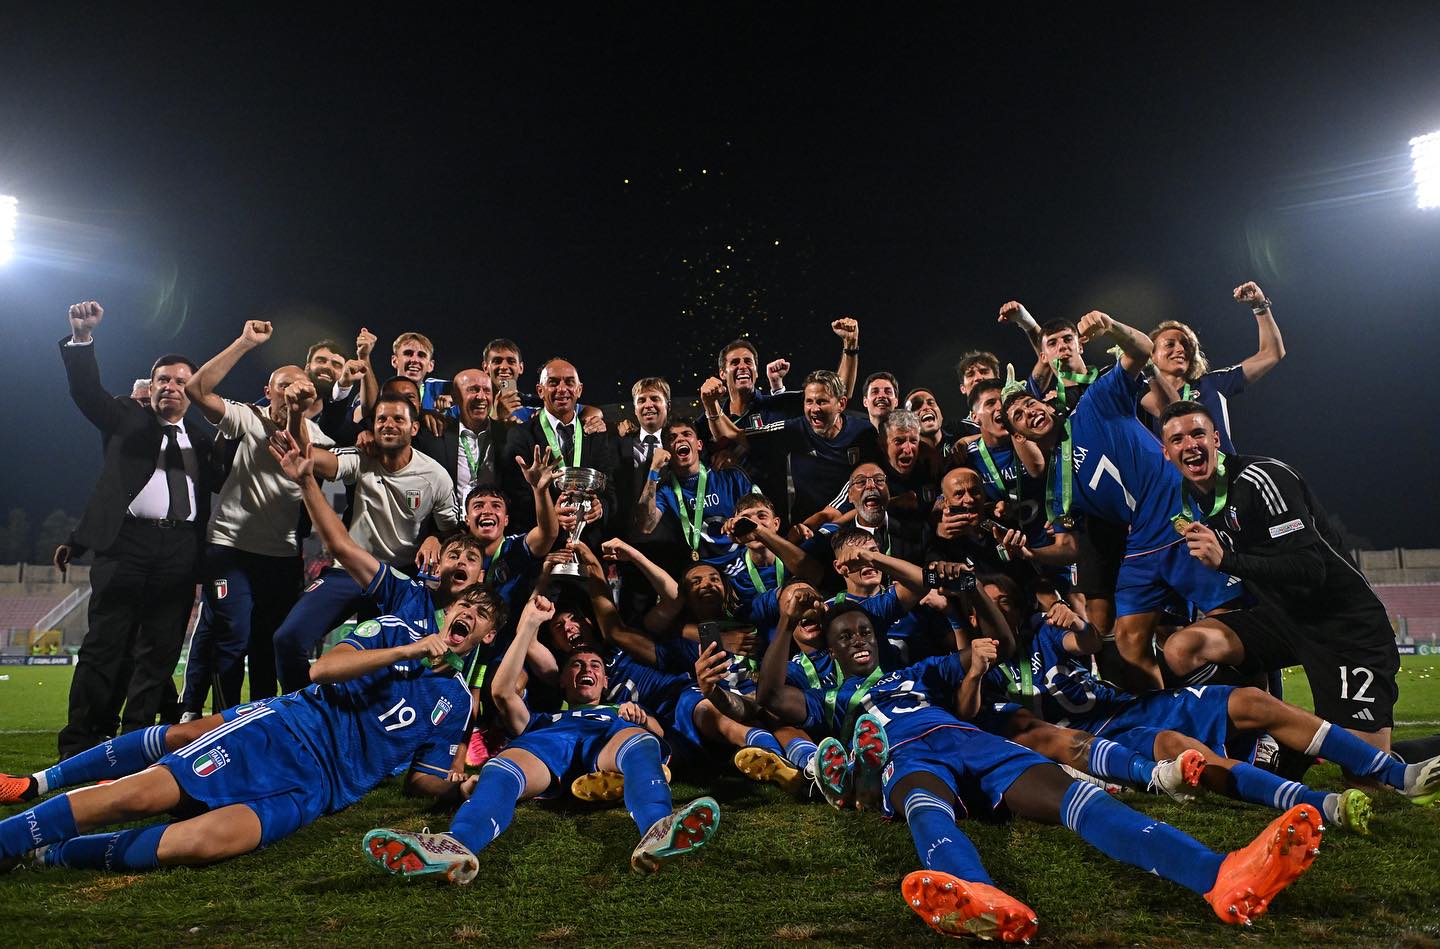 Câu chuyện về anh em họ Dellavalle trở thành nhà vô địch châu Âu với U19 Ý